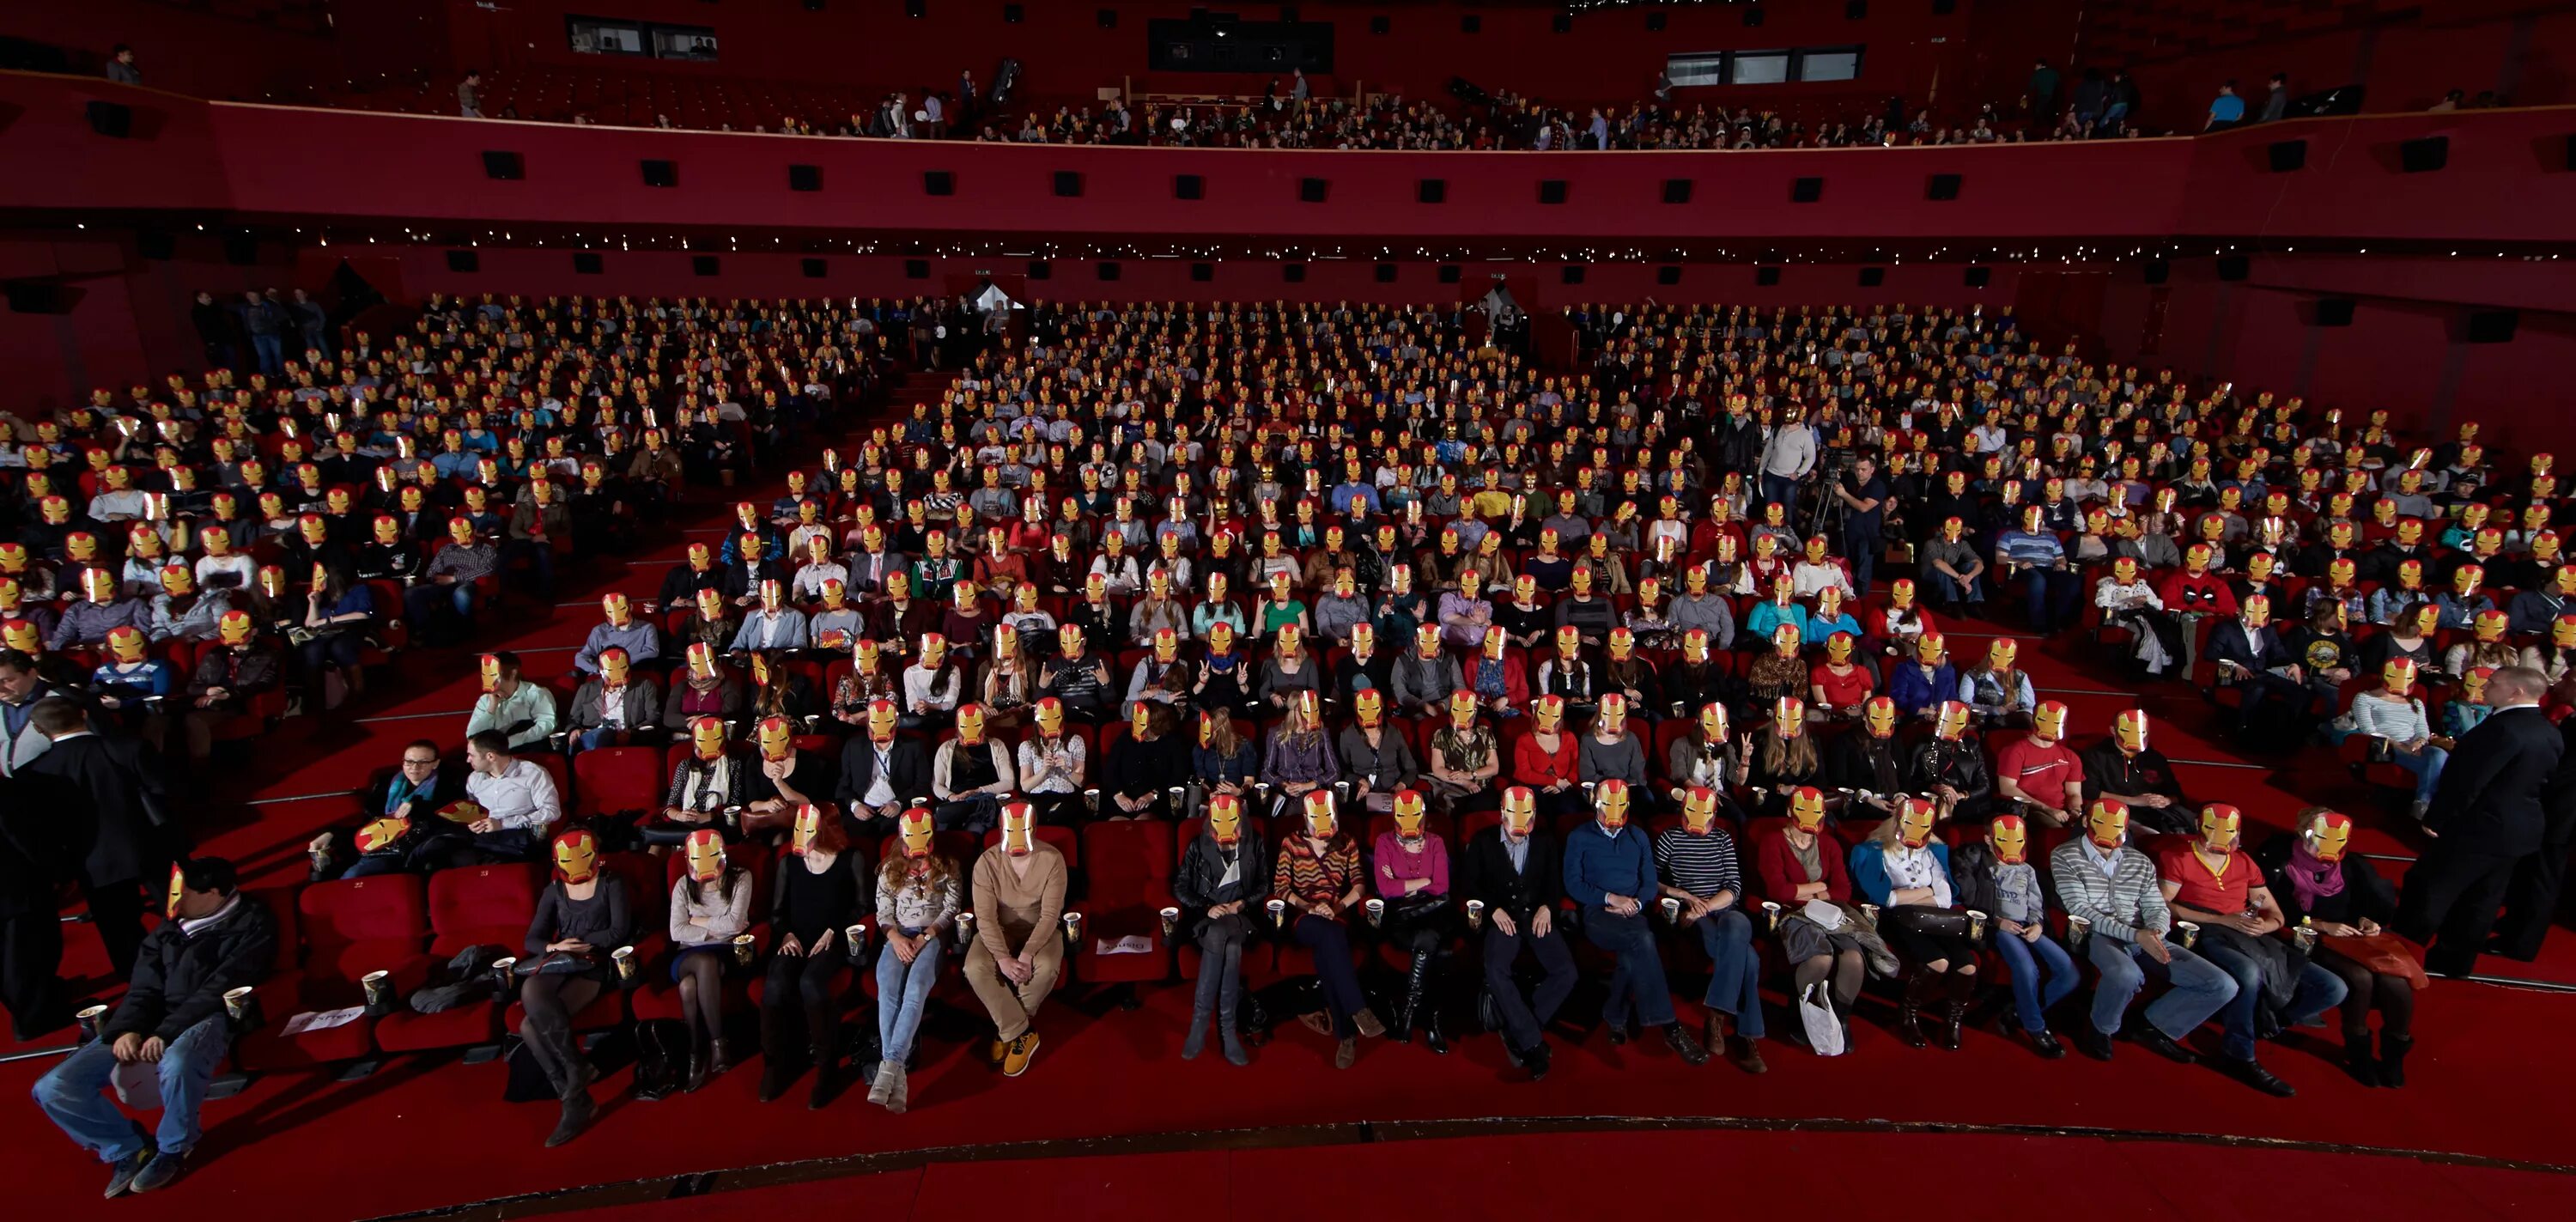 3 октября 2014. Зрительный зал с людьми. Зал со сценой. Полный зал людей. Сцена и полный зал.